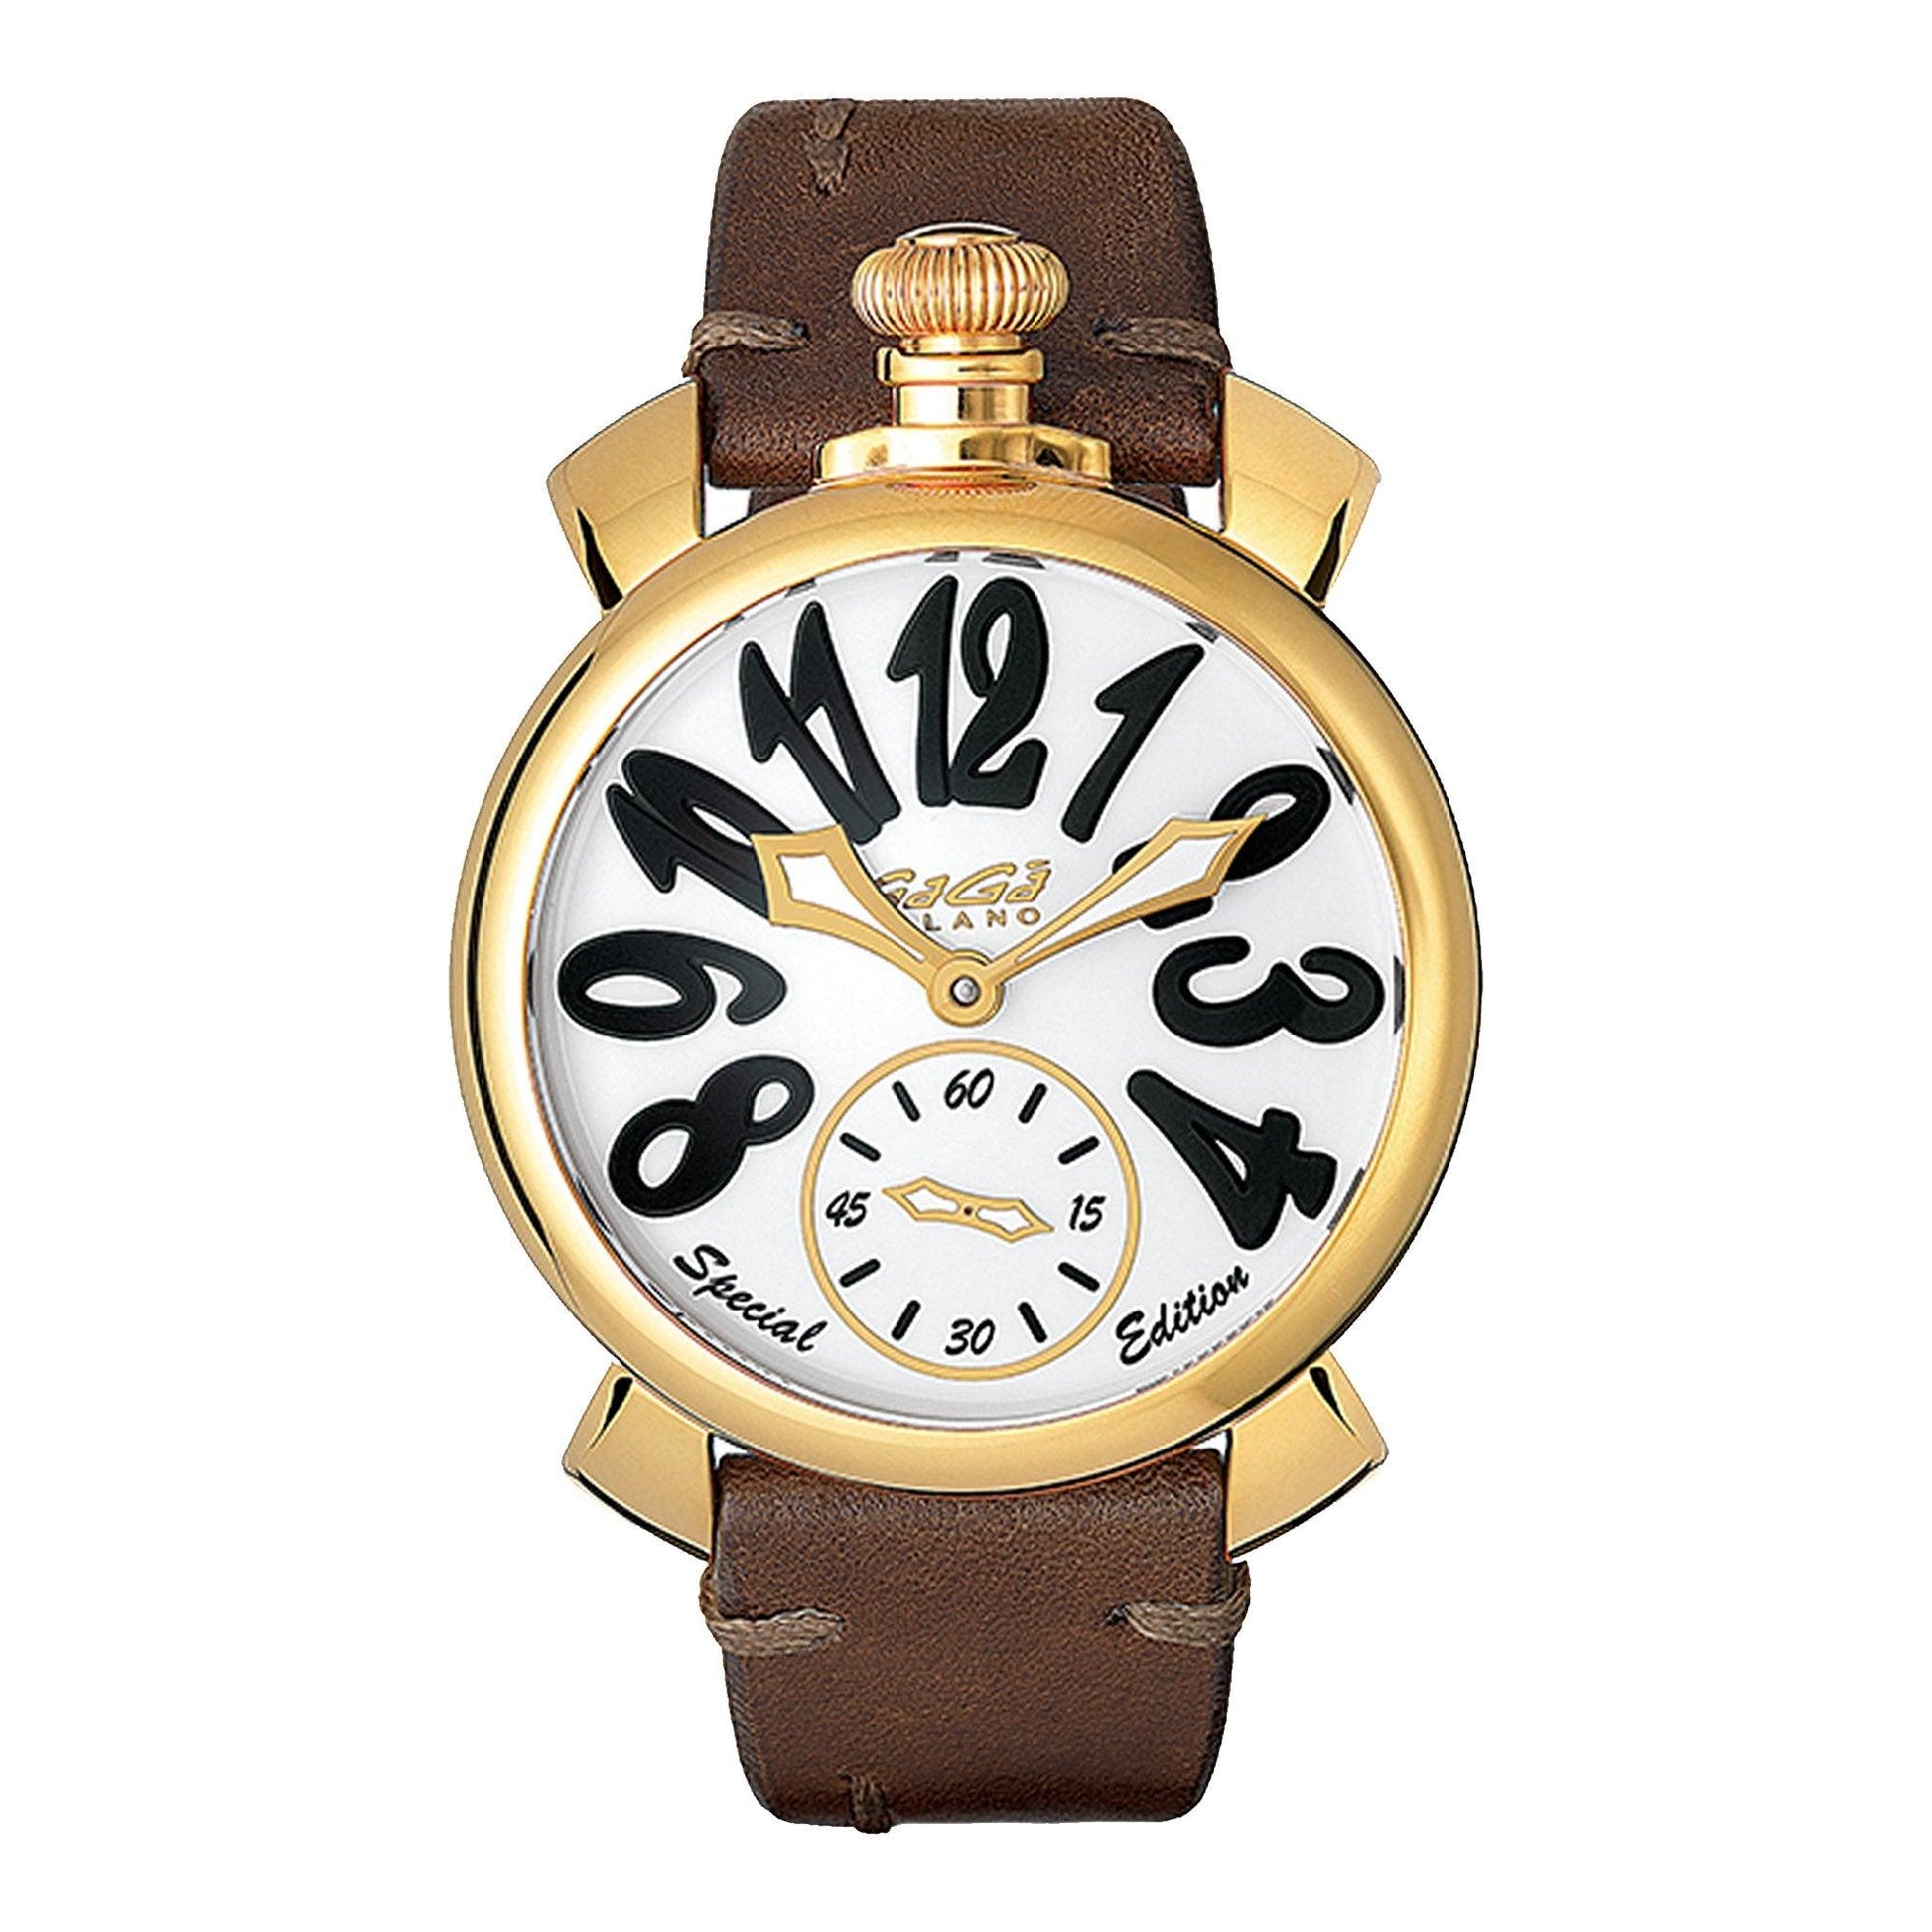 Gagà Milano Special Edition 5018SP03 orologio unisex meccanico - Kechiq Concept Boutique